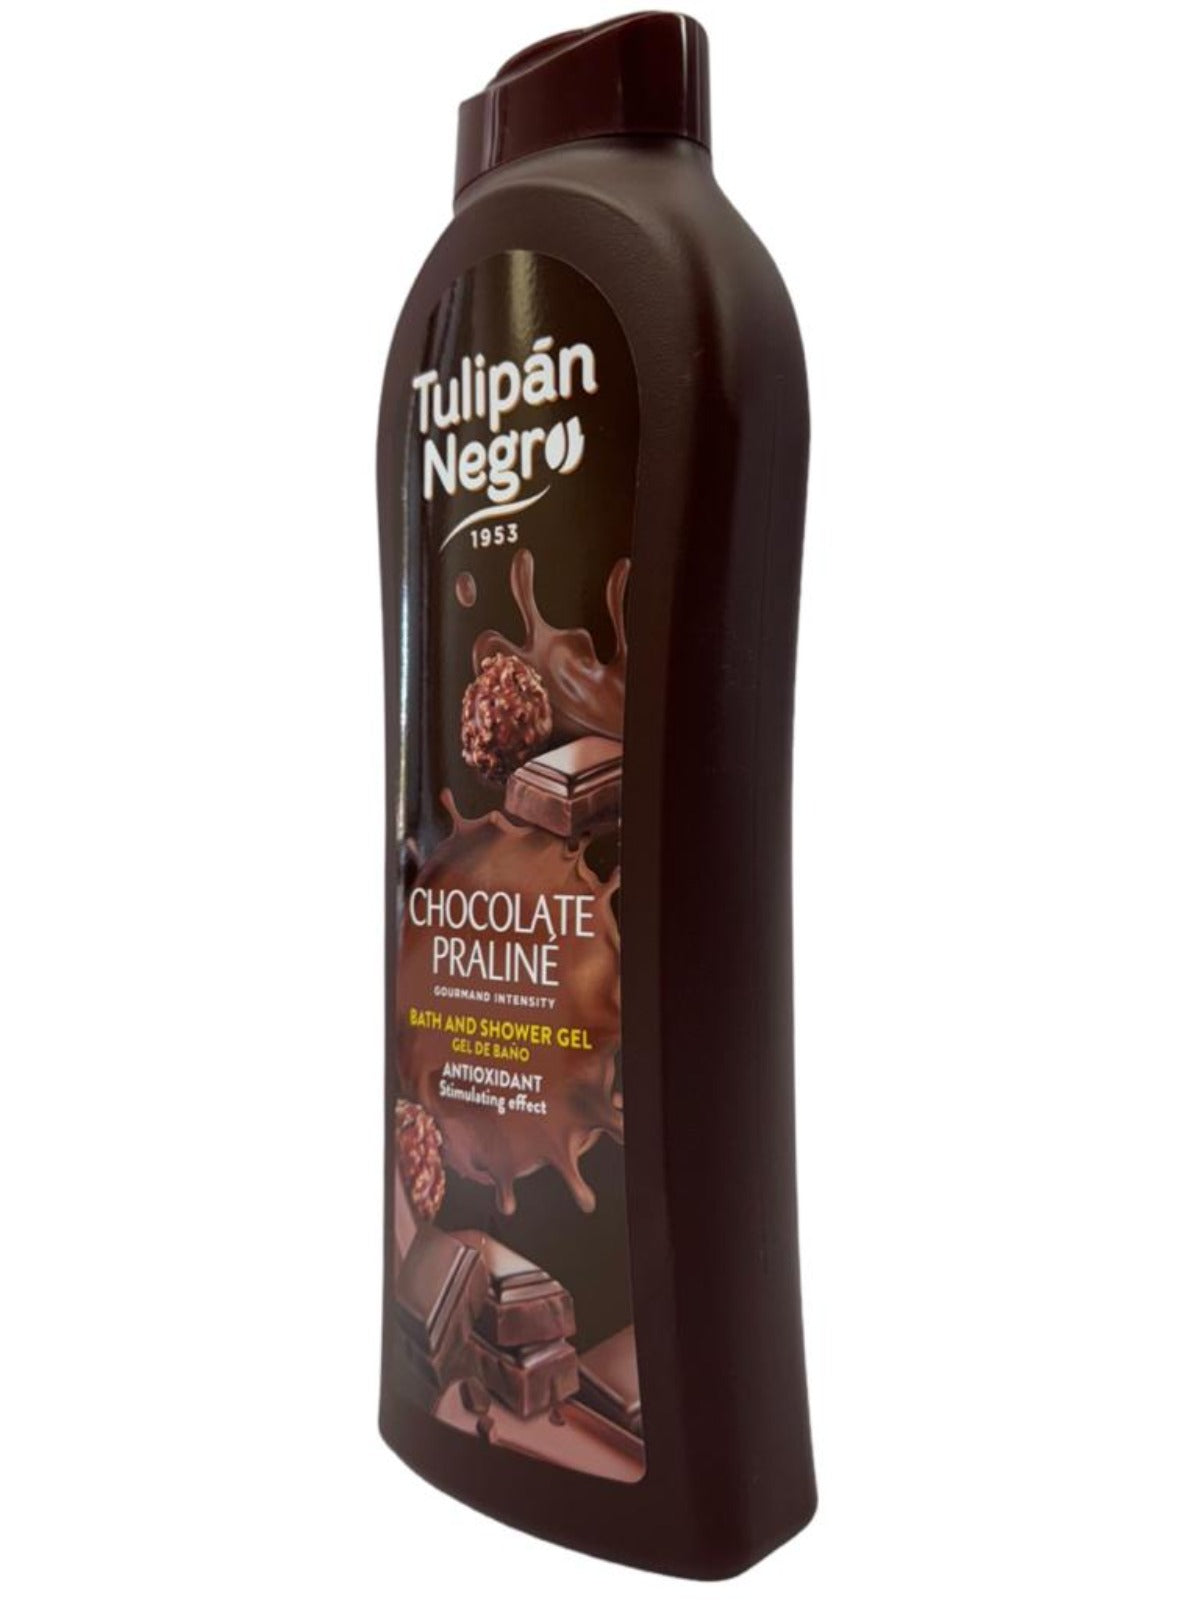 Tulipan Negro Chocolate Praline Spanish Bath And Shower Gel 650ml